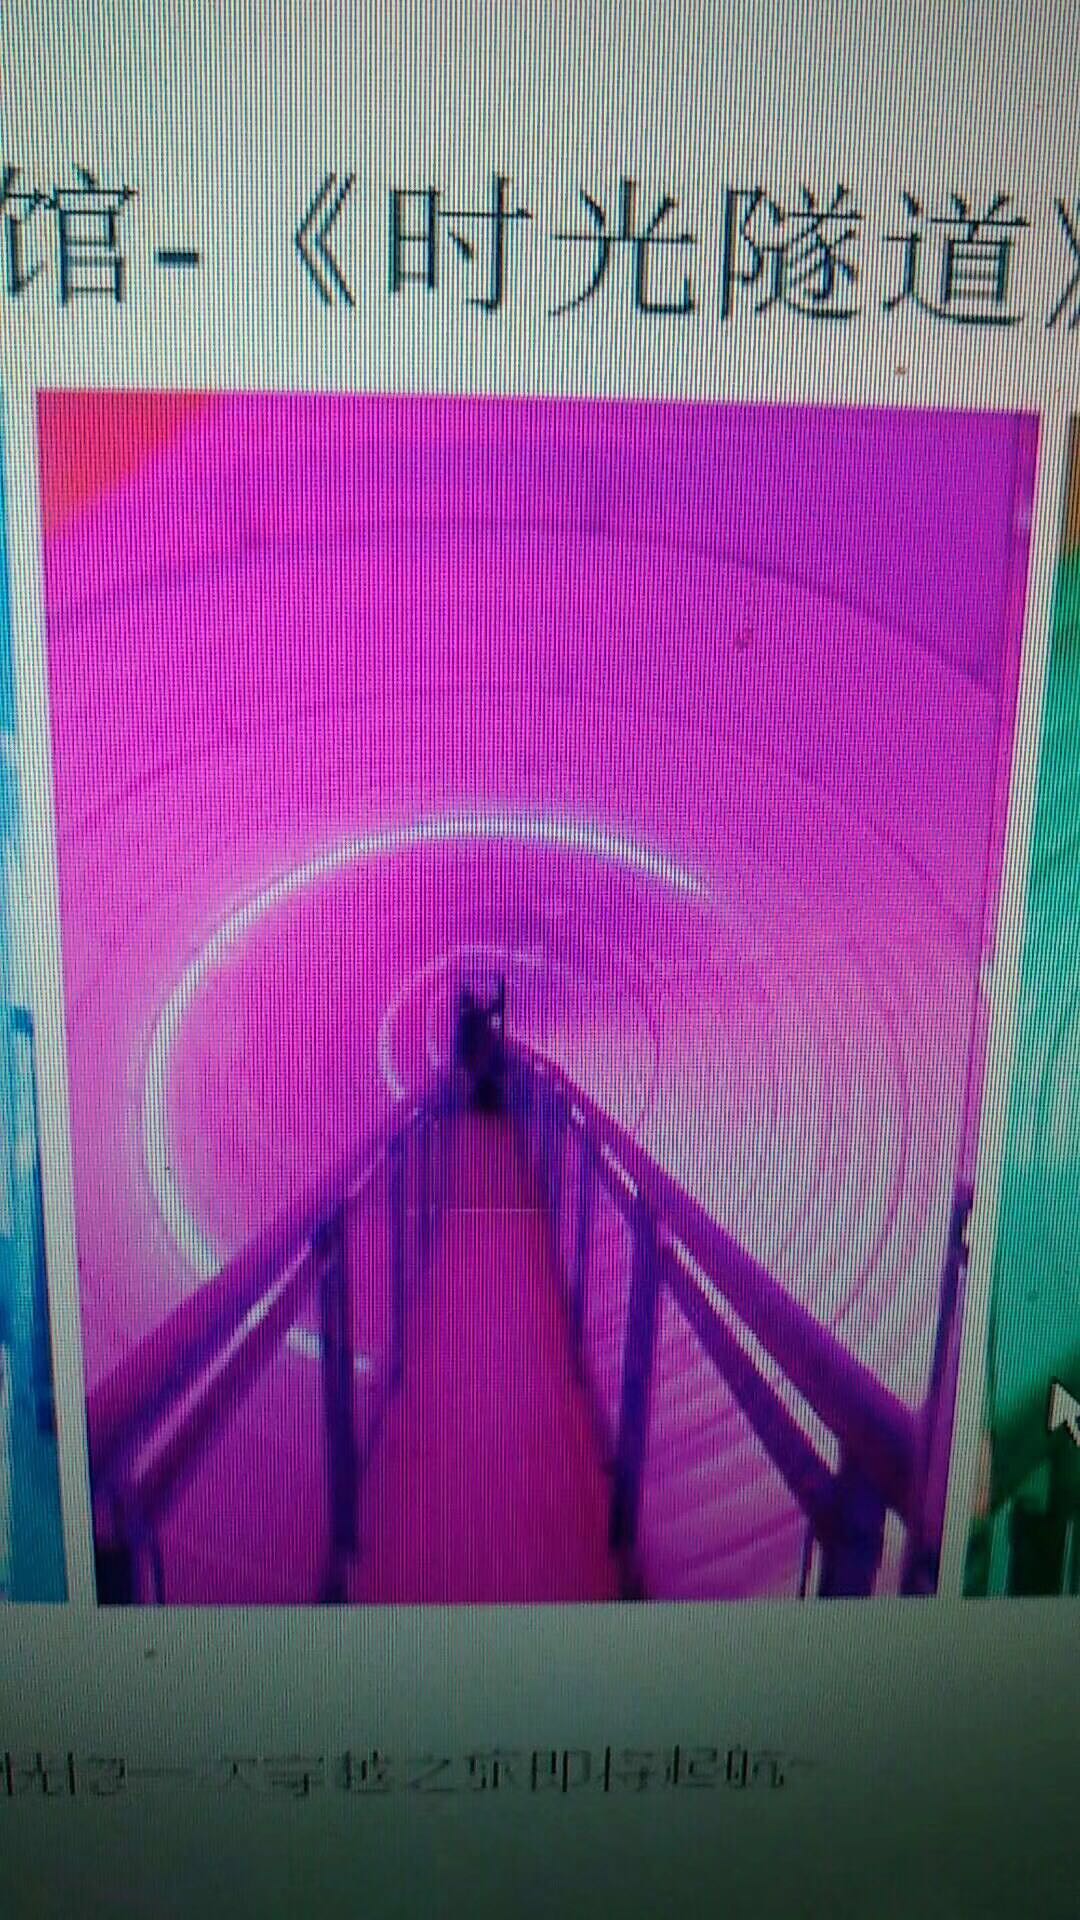 时光隧道进行体验的真实感受，炫酷时光隧道制作中心，时空随道租赁